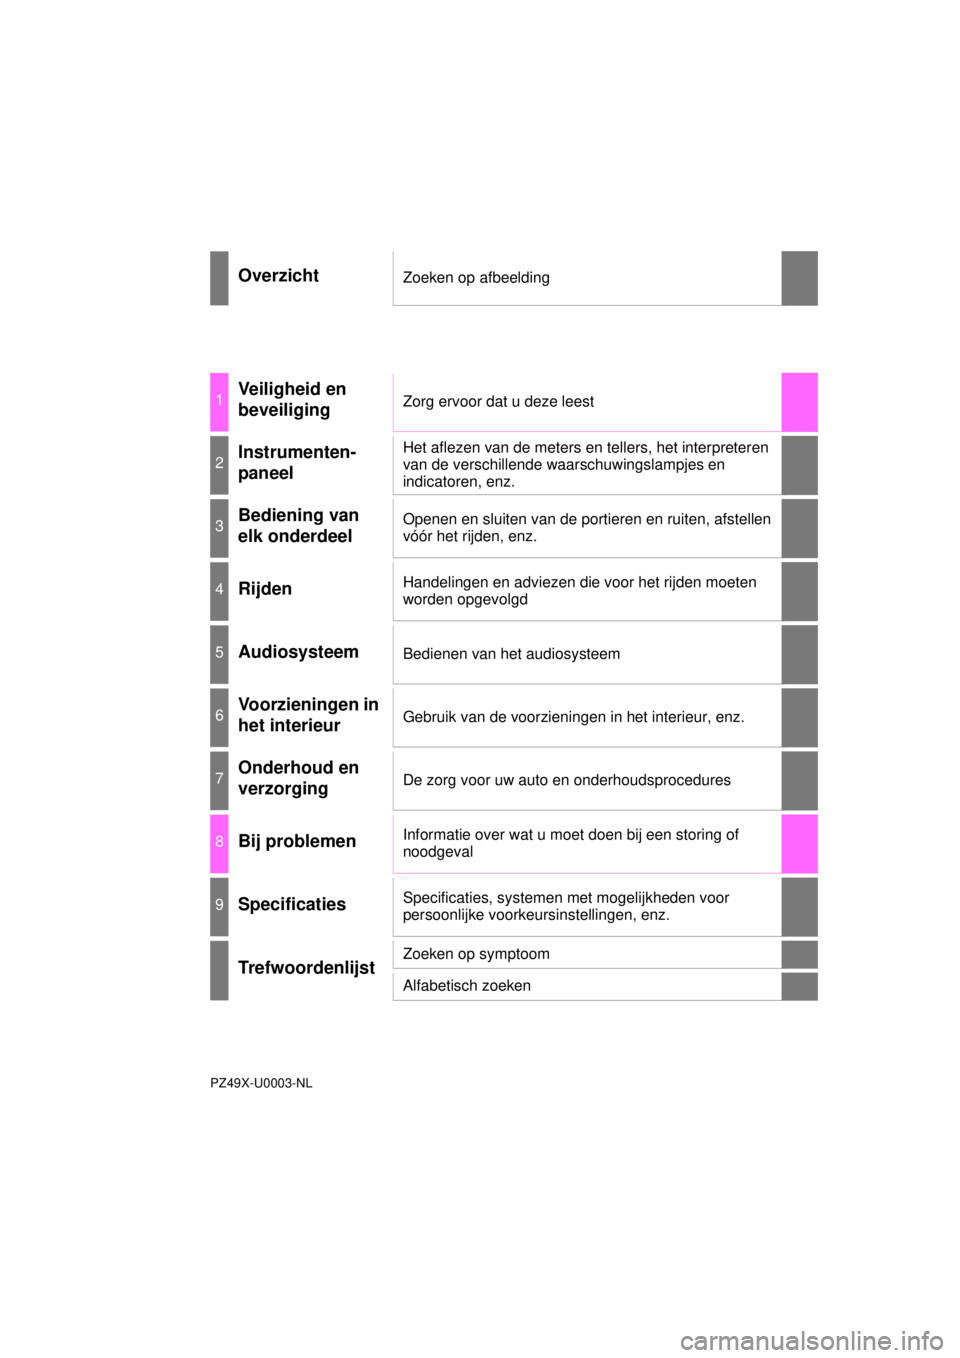 TOYOTA YARIS 2015  Instructieboekje (in Dutch) YARIS_F_WE_52D53E
OverzichtZoeken op afbeelding
1Veiligheid en 
beveiligingZorg ervoor dat u deze leest
2Instrumenten-
paneelHet aflezen van de meters en tellers, het interpreteren 
van de verschillen